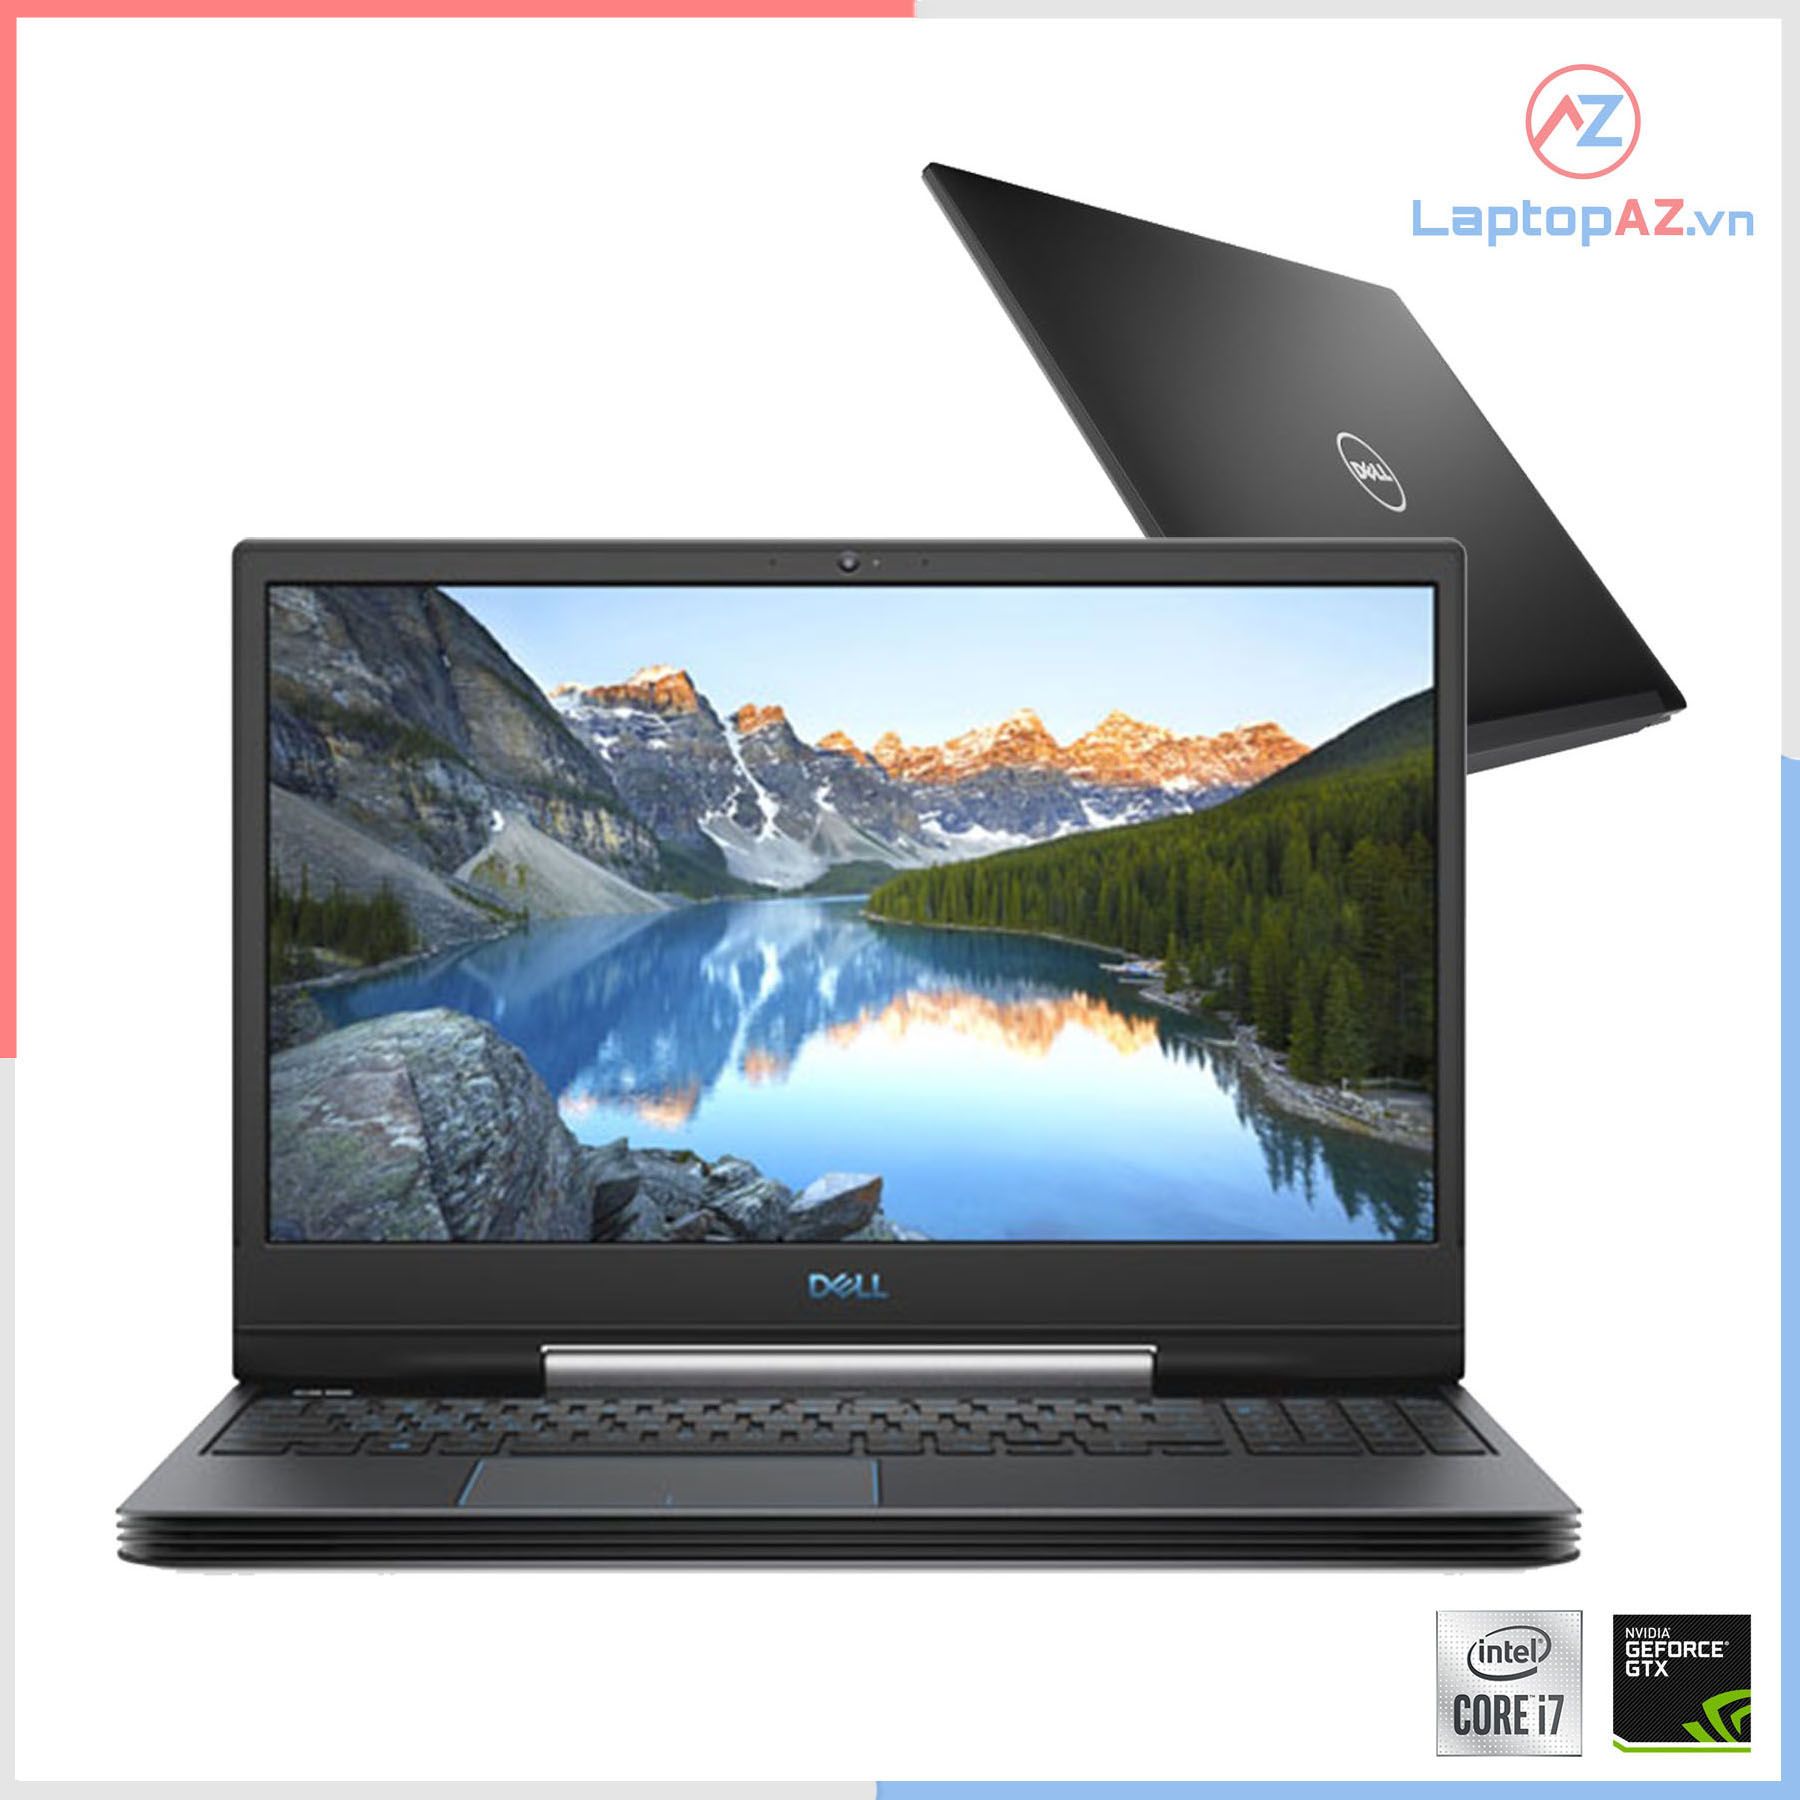 Laptop cũ Dell Gaming G5 5590 Core i7 8750H, 8GB, 256GB, GTX 1050Ti 4GB, 15.6' FHD